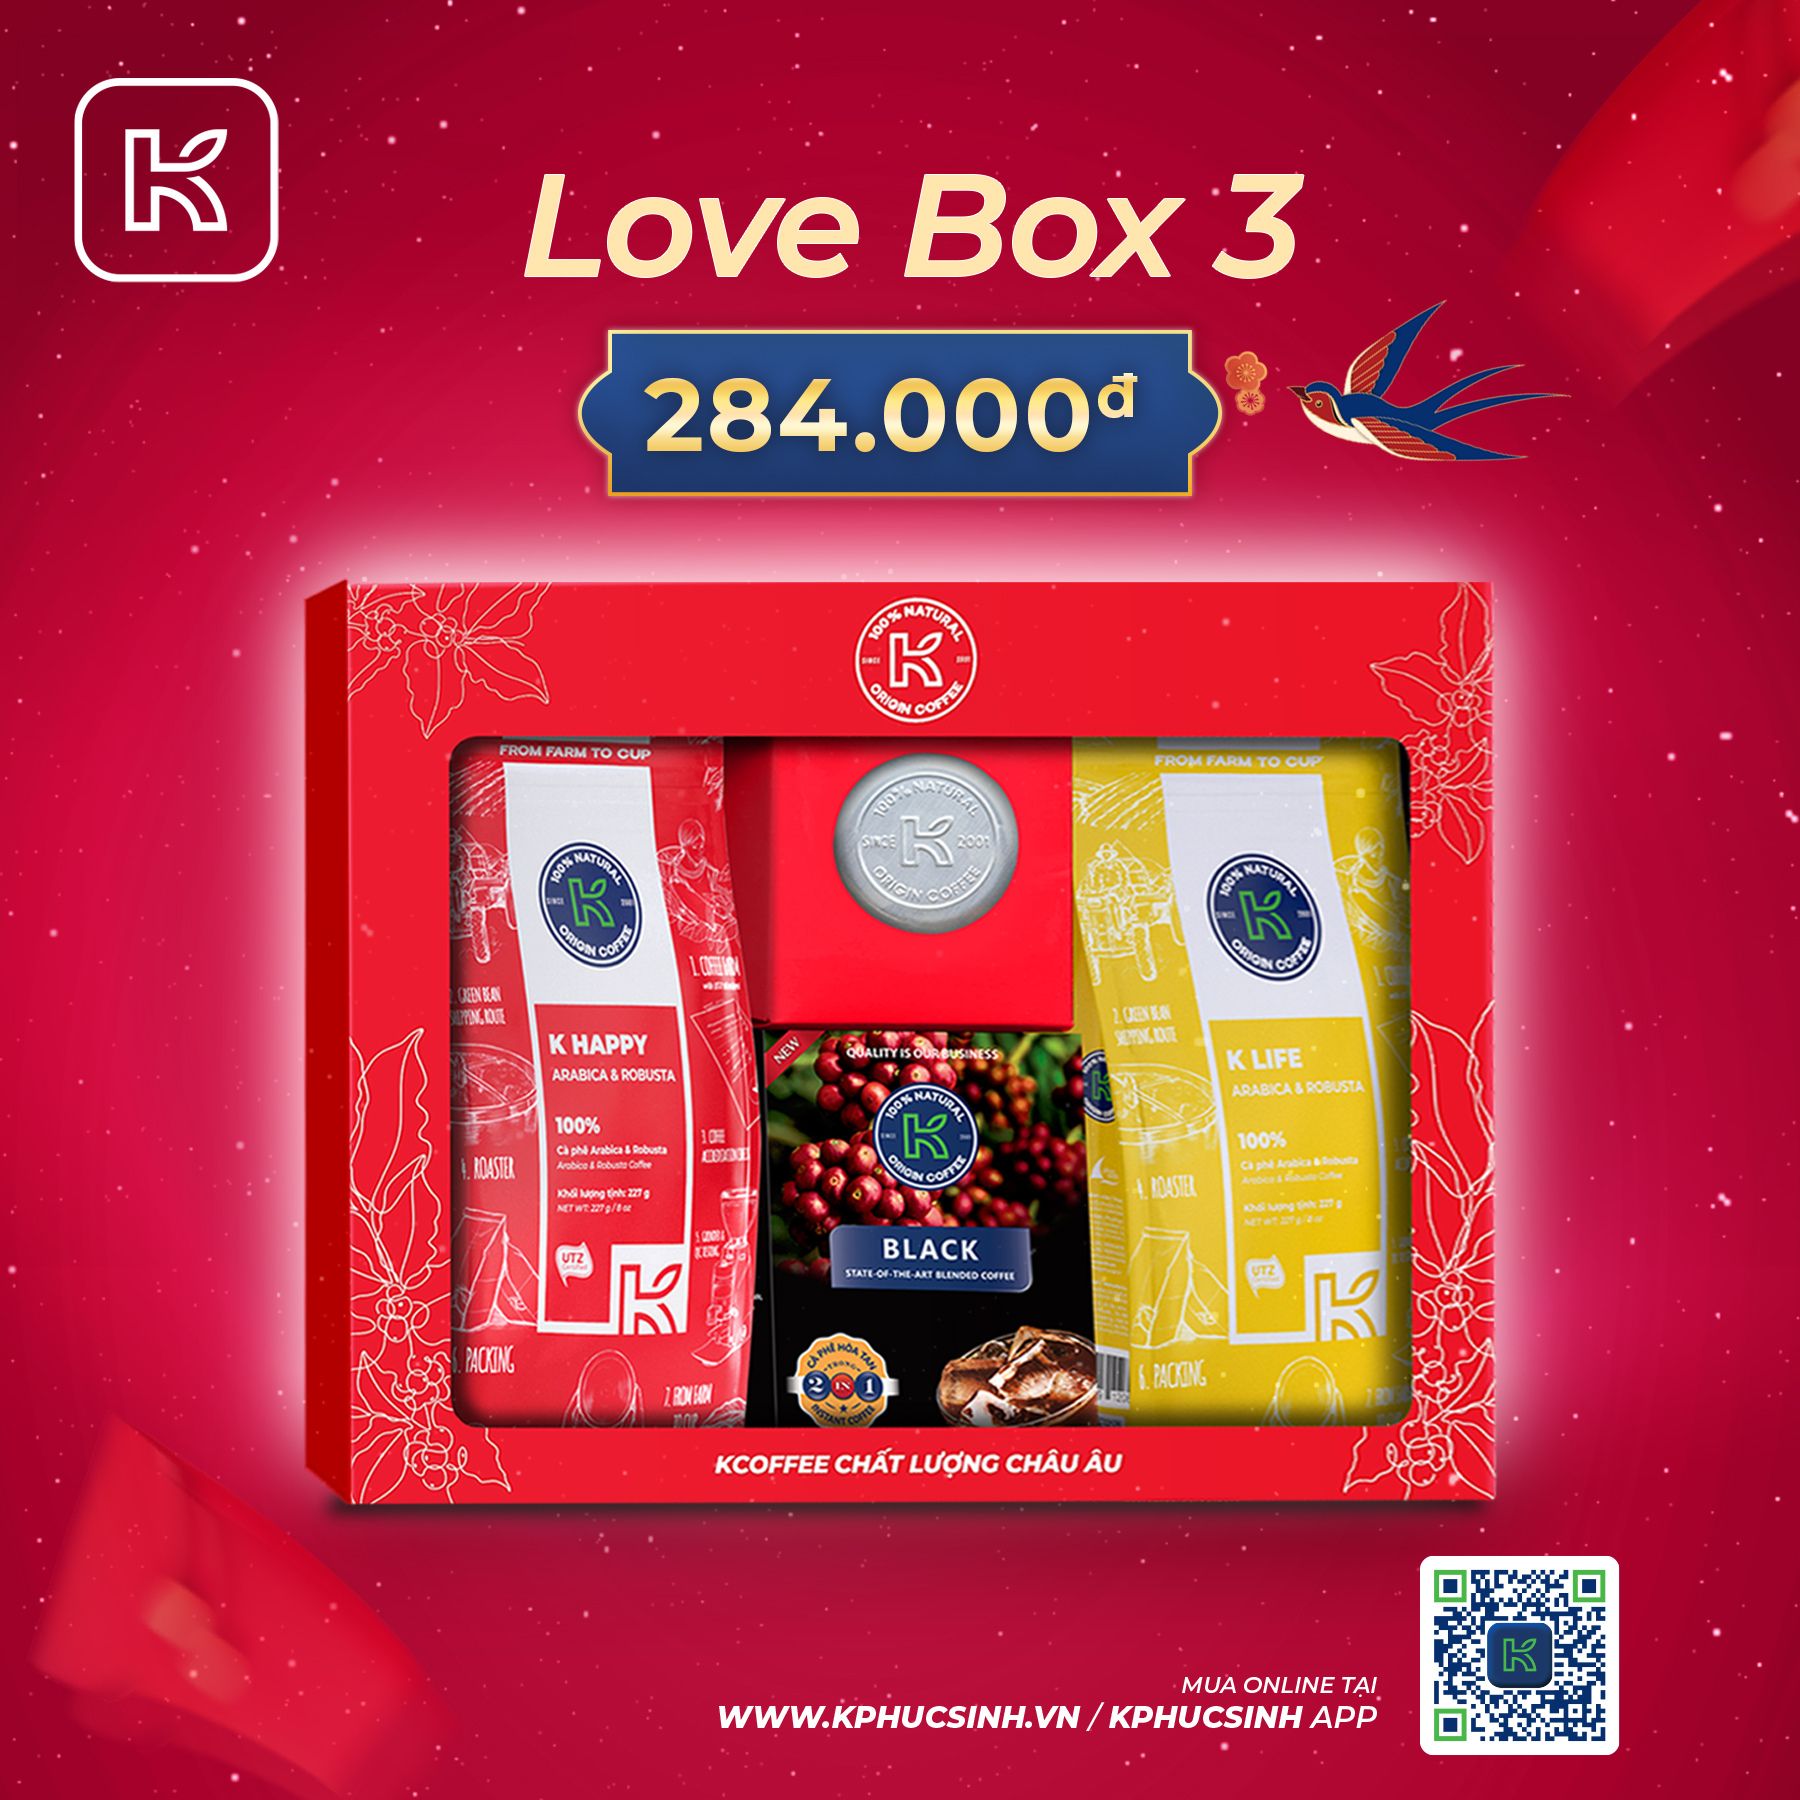 GIFTSET CÀ PHÊ LOVE BOX 3